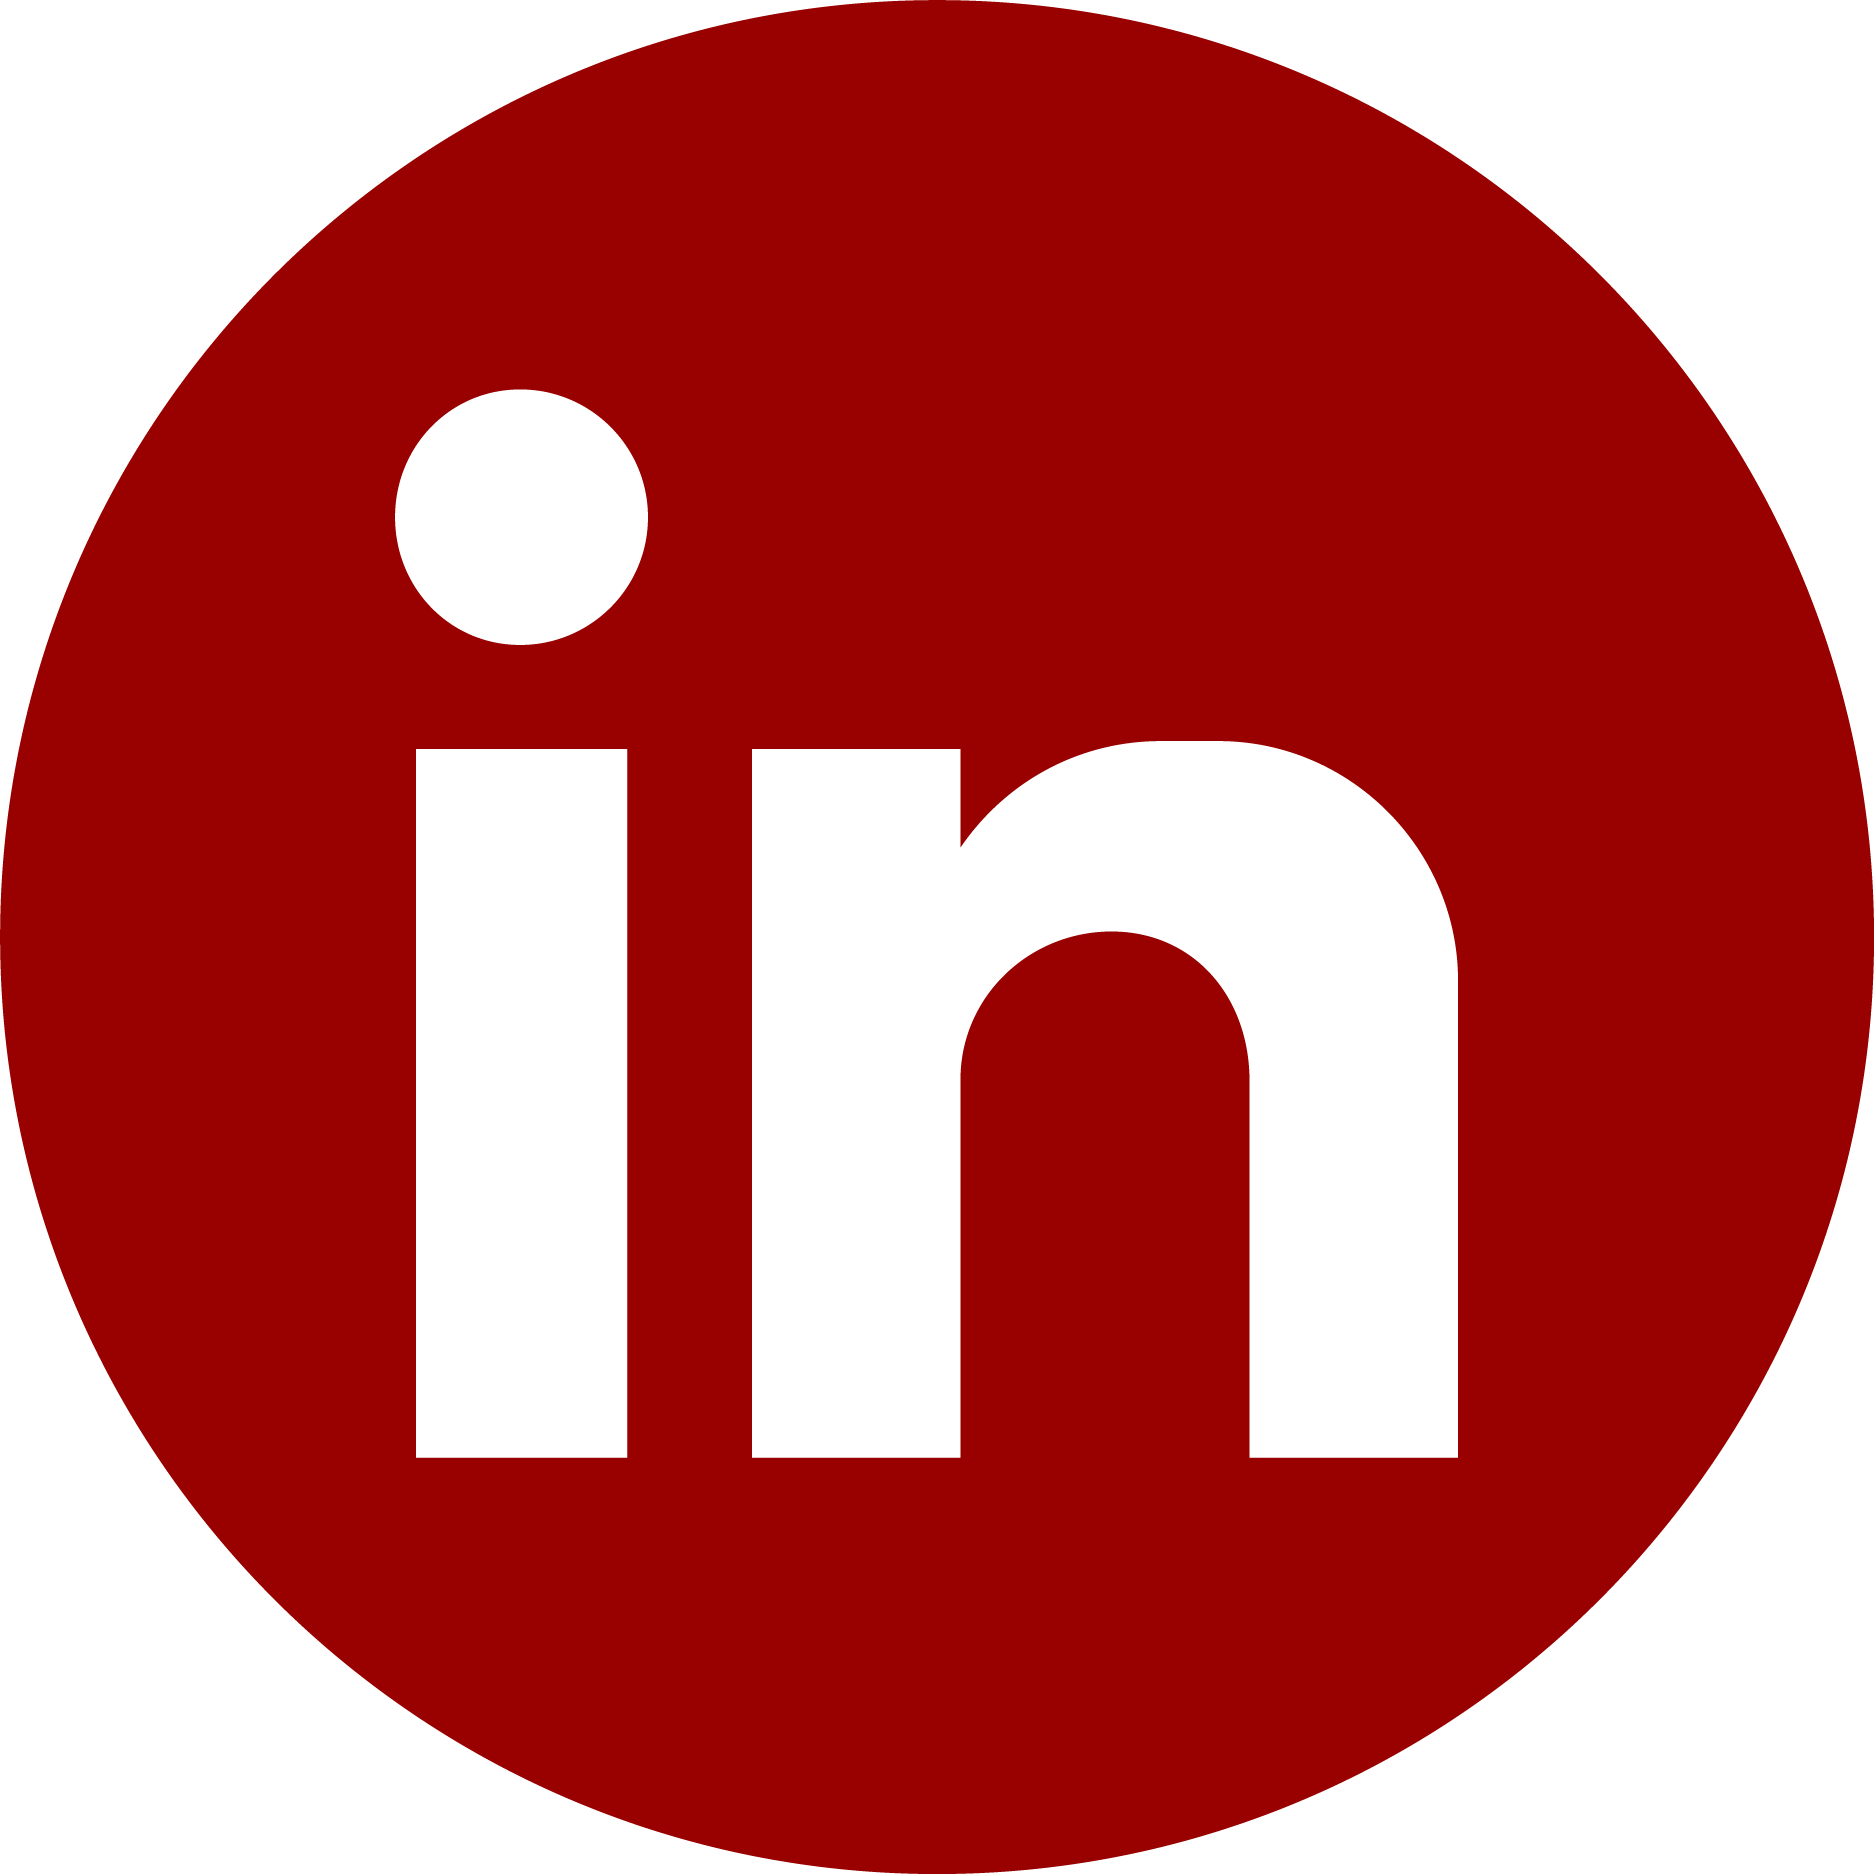 Icon for LinkedIn platform